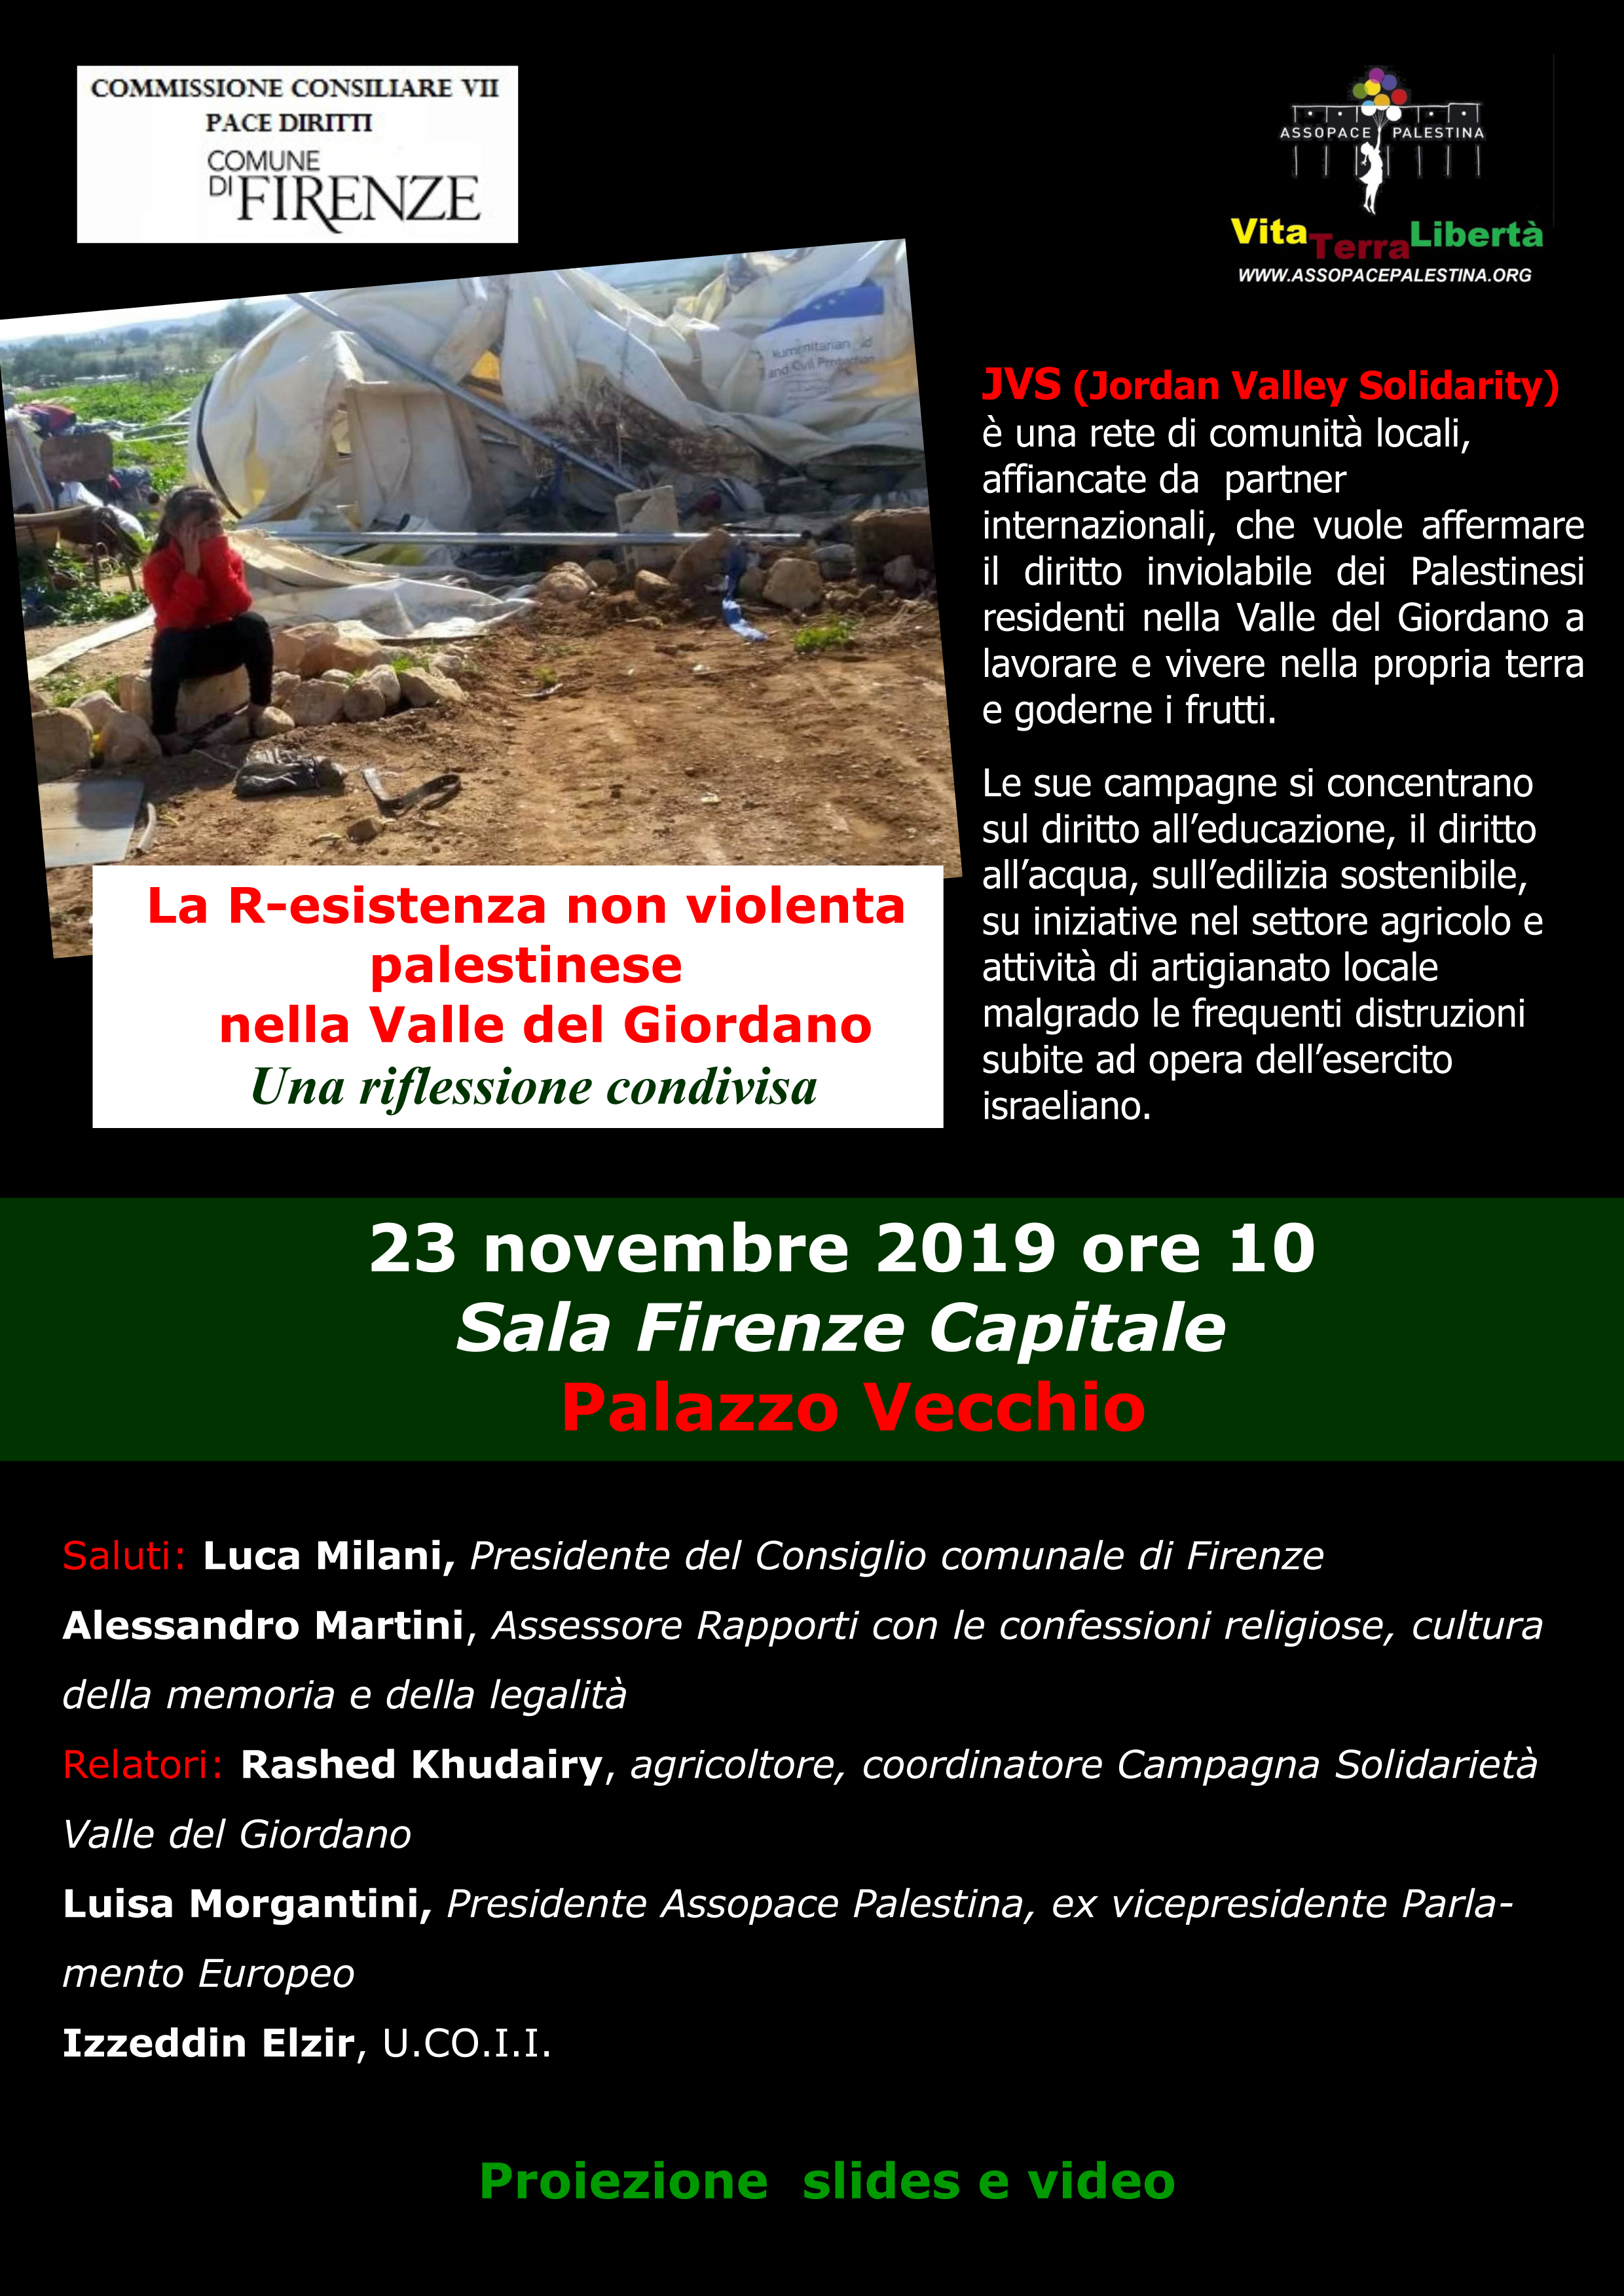 Firenze 23 novembre: La R-esistenza non violenta palestinese nella Valle del Giordano